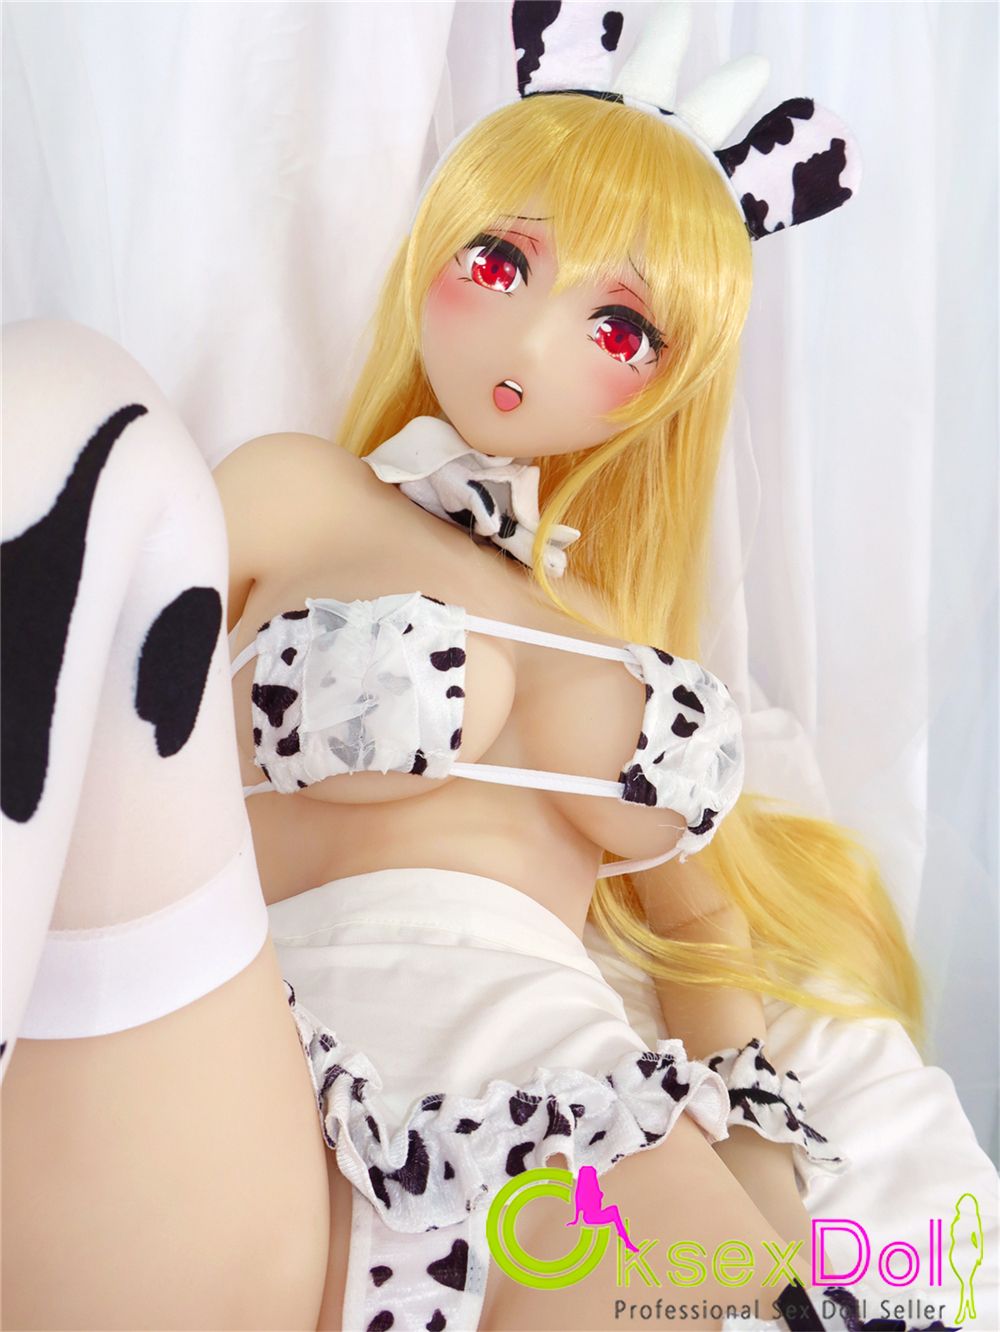 Blonde sex dolls images